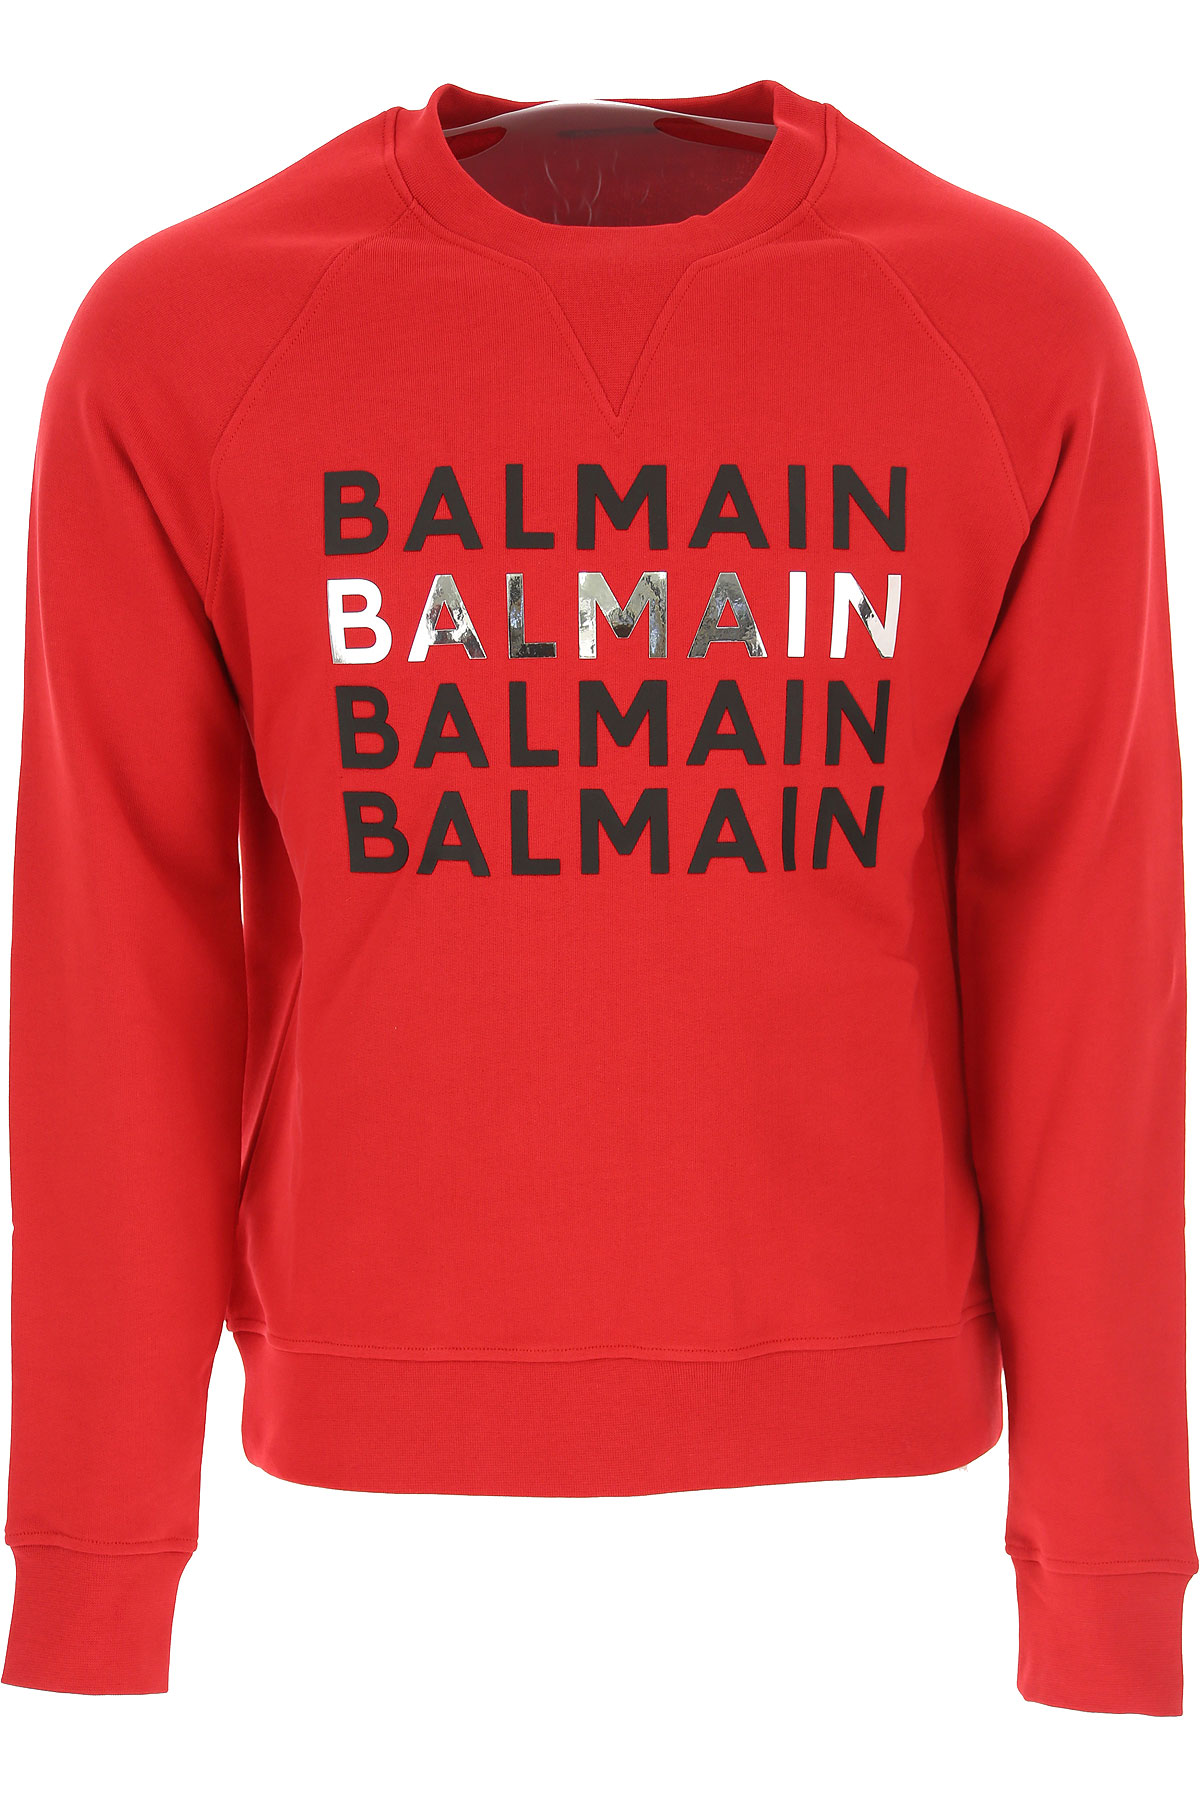 Balmain Sweatshirt für Herren, Kapuzenpulli, Hoodie, Sweats Günstig im Sale, Feuerrot, Baumwolle, 2017, L M S XL XS